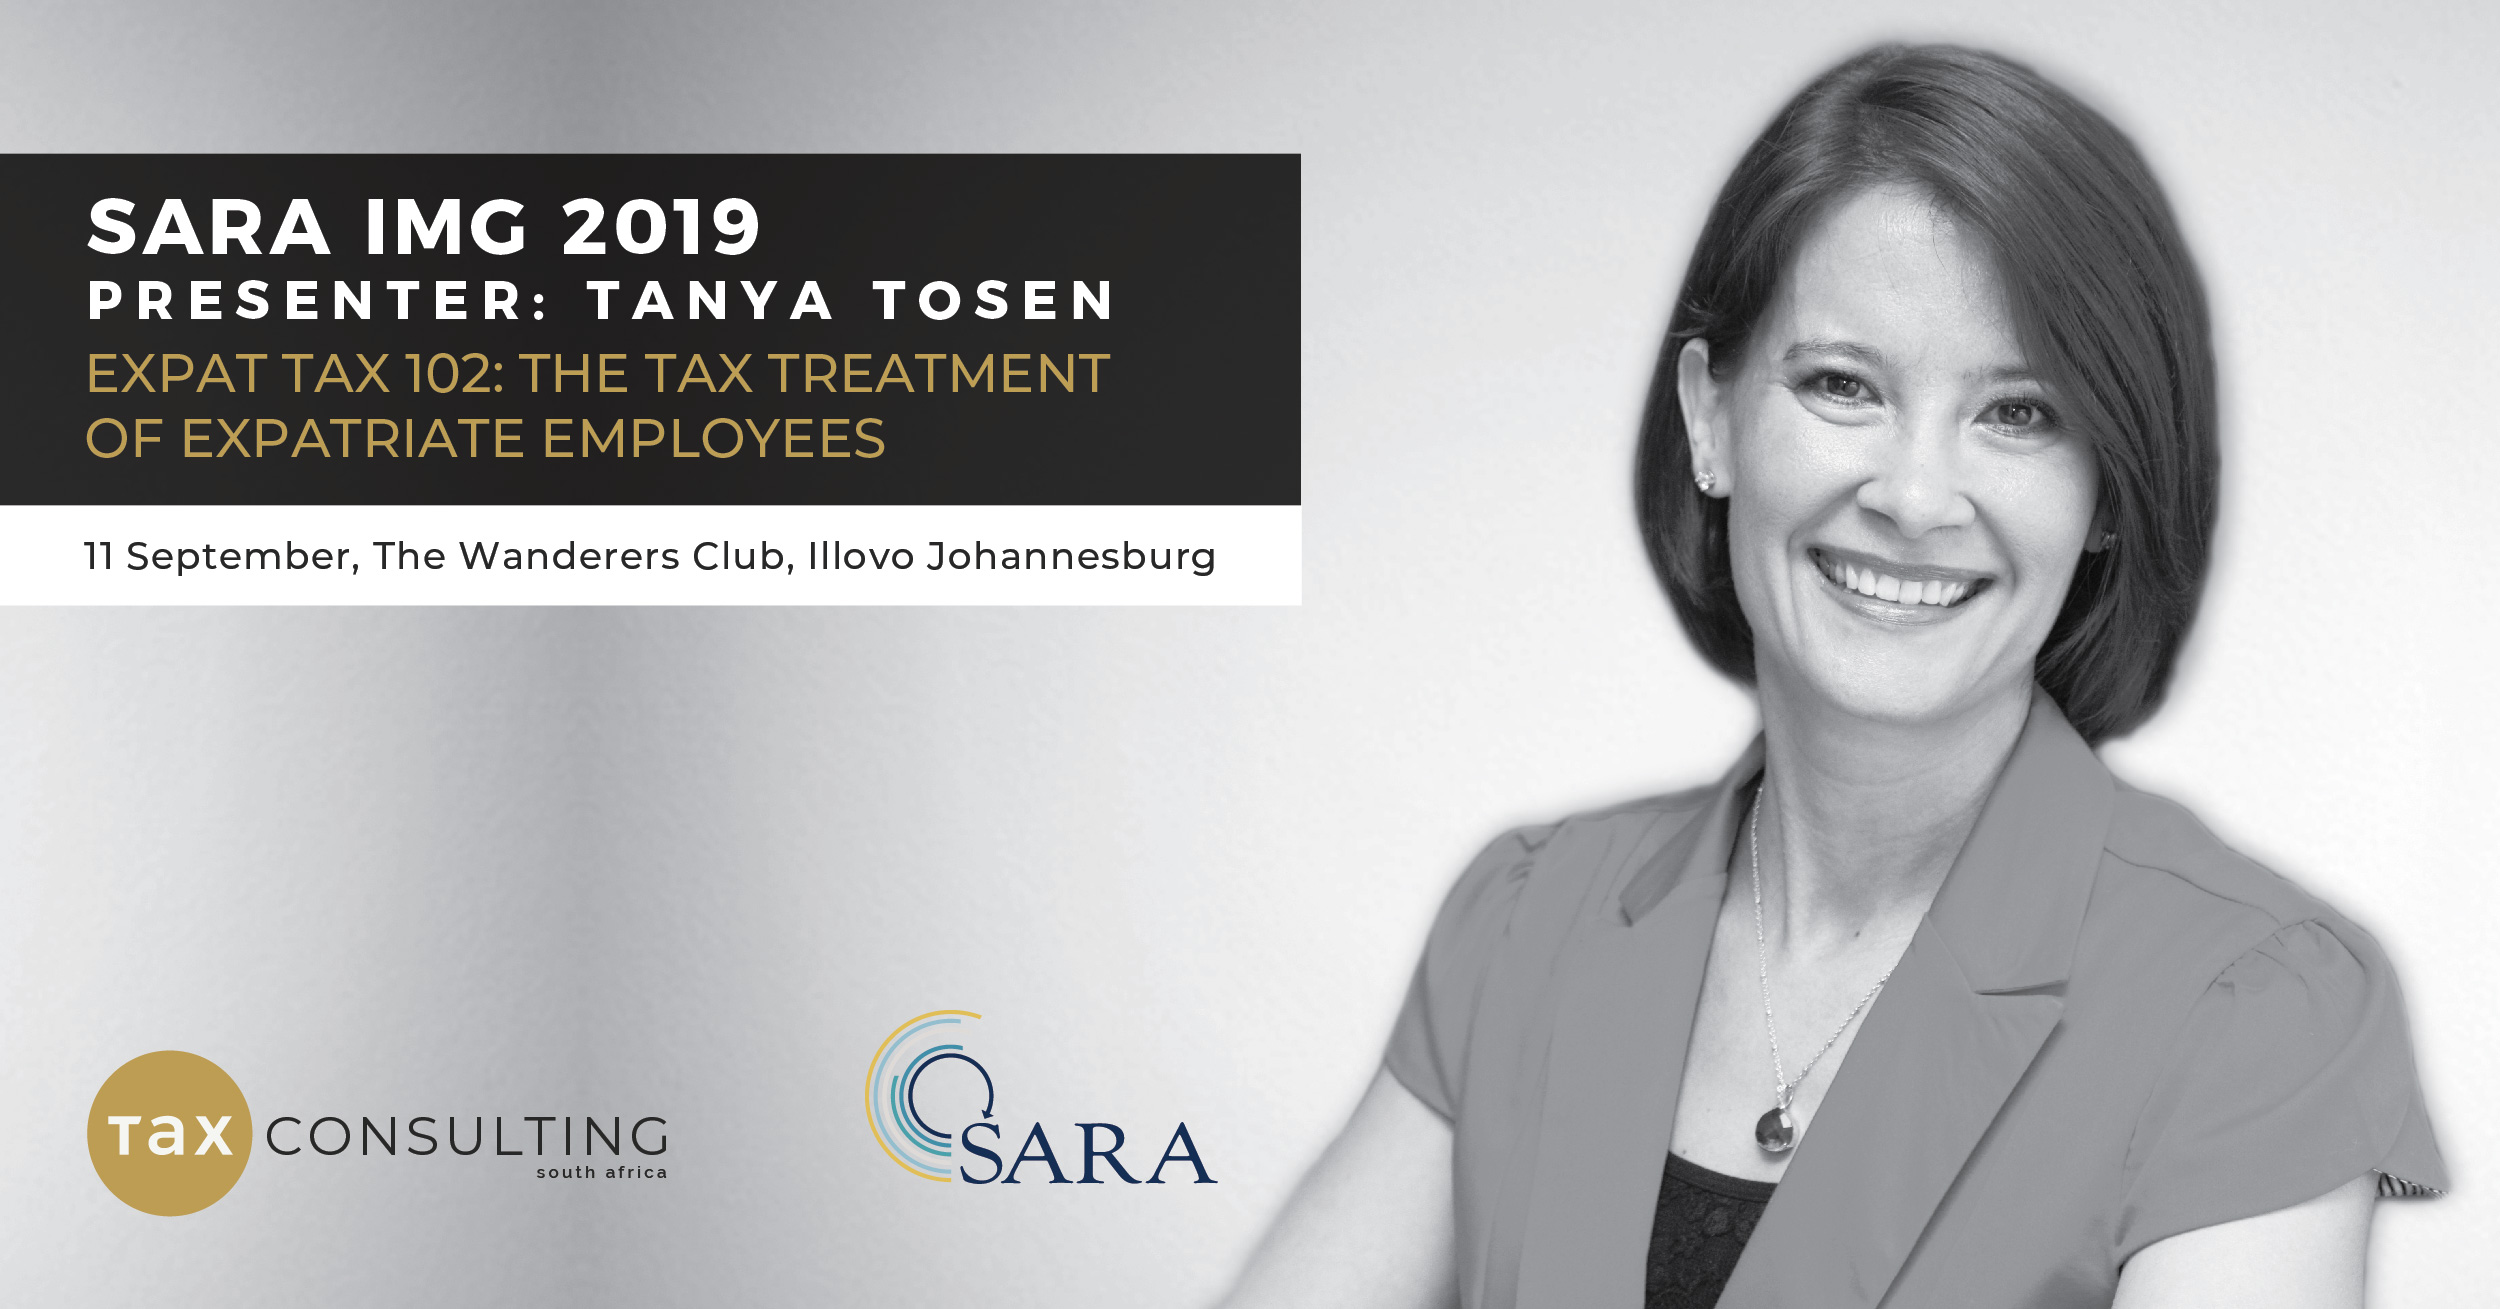 SARA IMG 2019 - Tanya Tosen